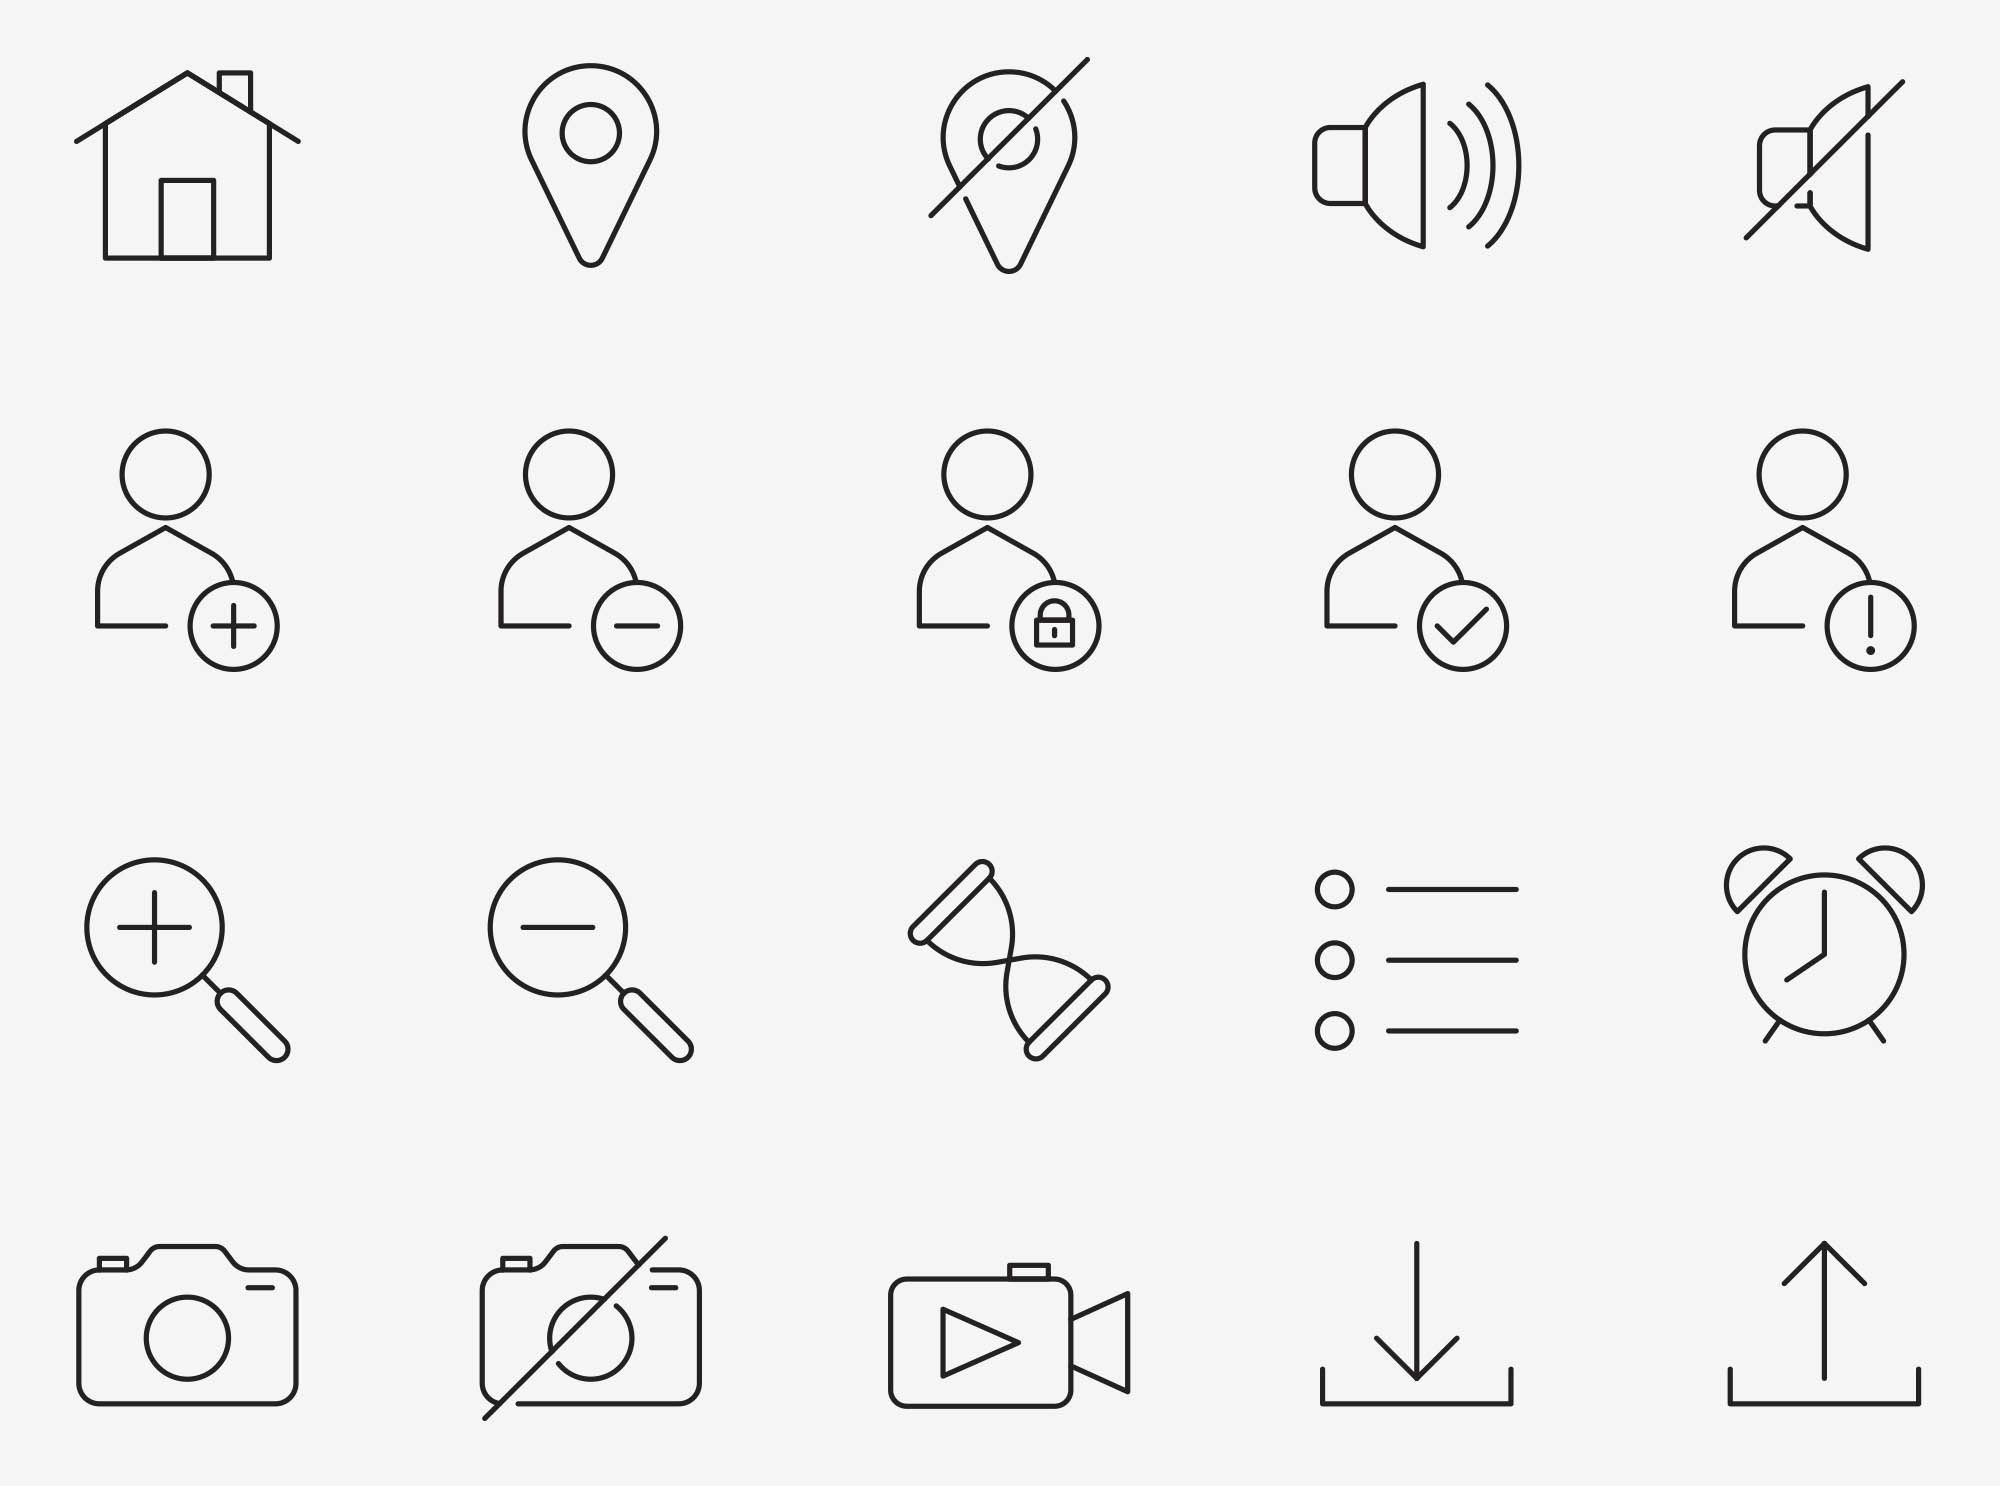 80个UI界面图标 80 Interface Icons 图标素材 第4张